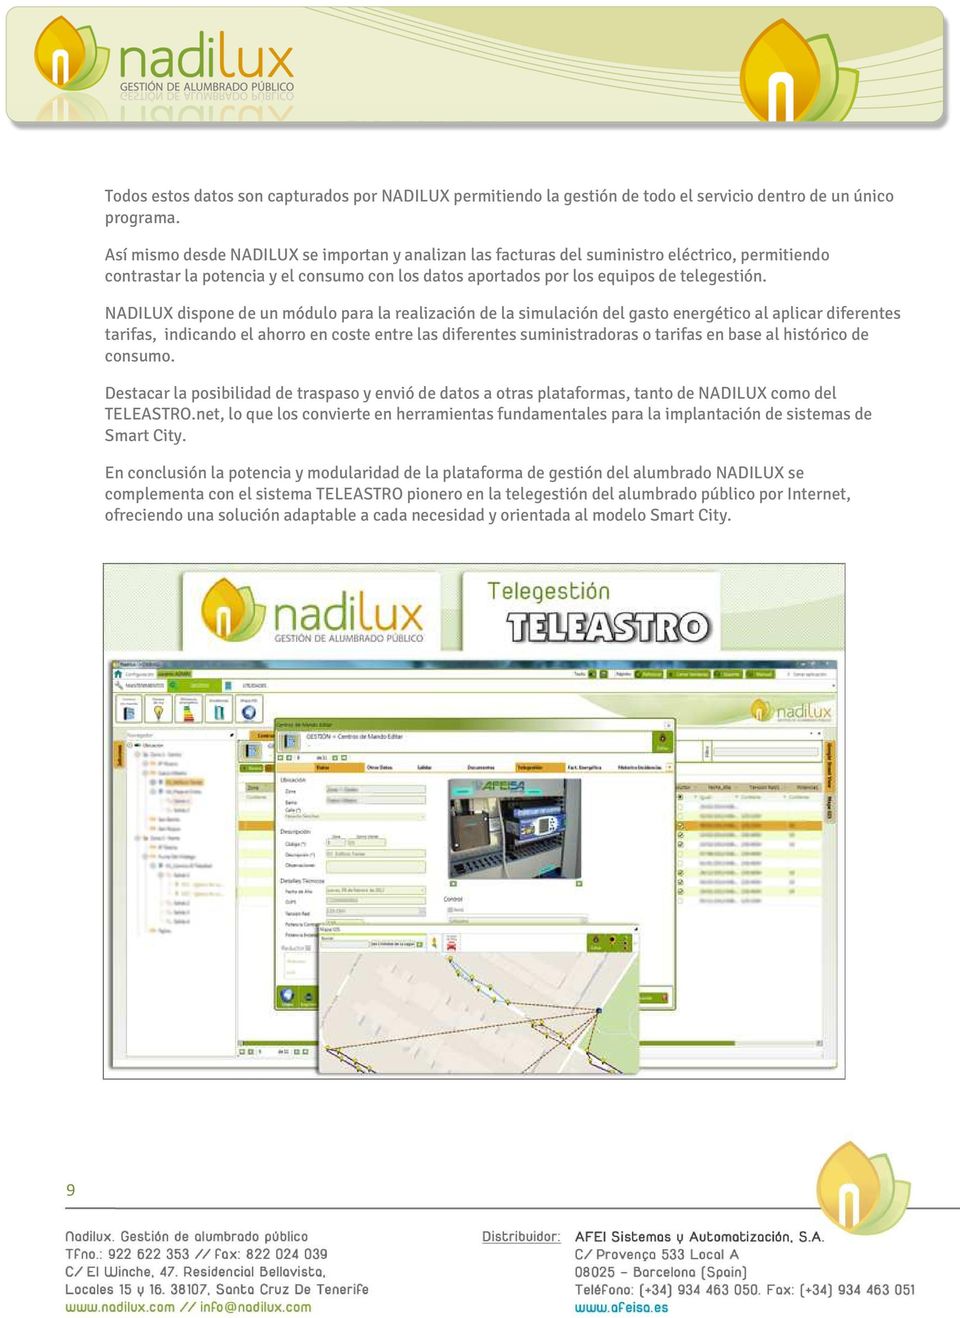 NADILUX dispone de un módulo para la realización de la simulación del gasto energético al aplicar diferentes tarifas, indicando el ahorro en coste entre las diferentes suministradoras o tarifas en